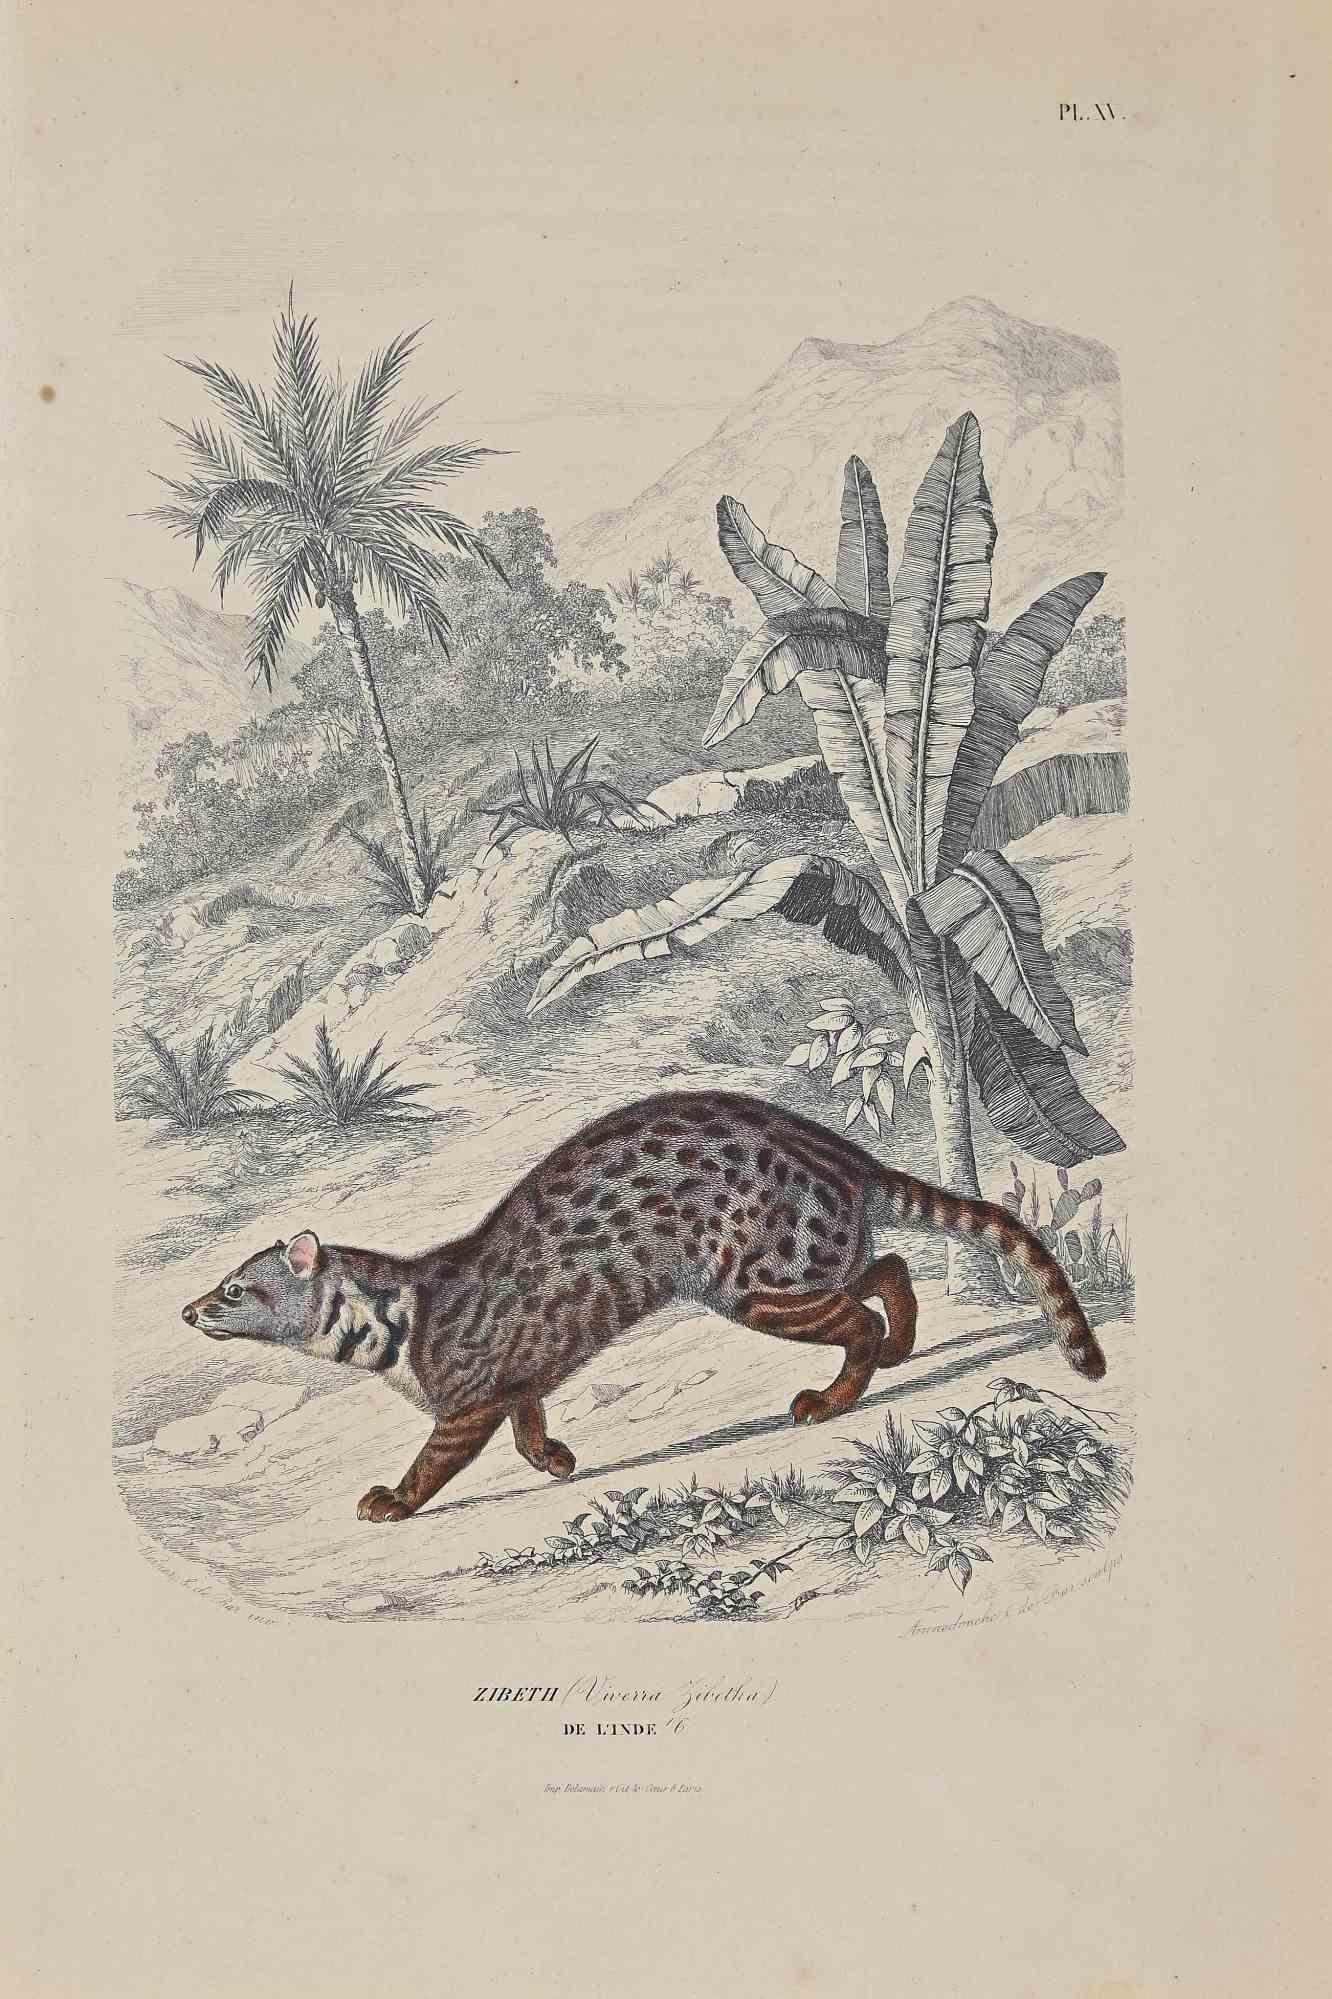 Zibeth est une lithographie originale sur papier couleur ivoire, réalisée par Paul Gervais (1816-1879). L'œuvre est tirée de la série "Les Trois Règnes de la Nature", et a été publiée en 1854.

Bonnes conditions à l'exception de quelques